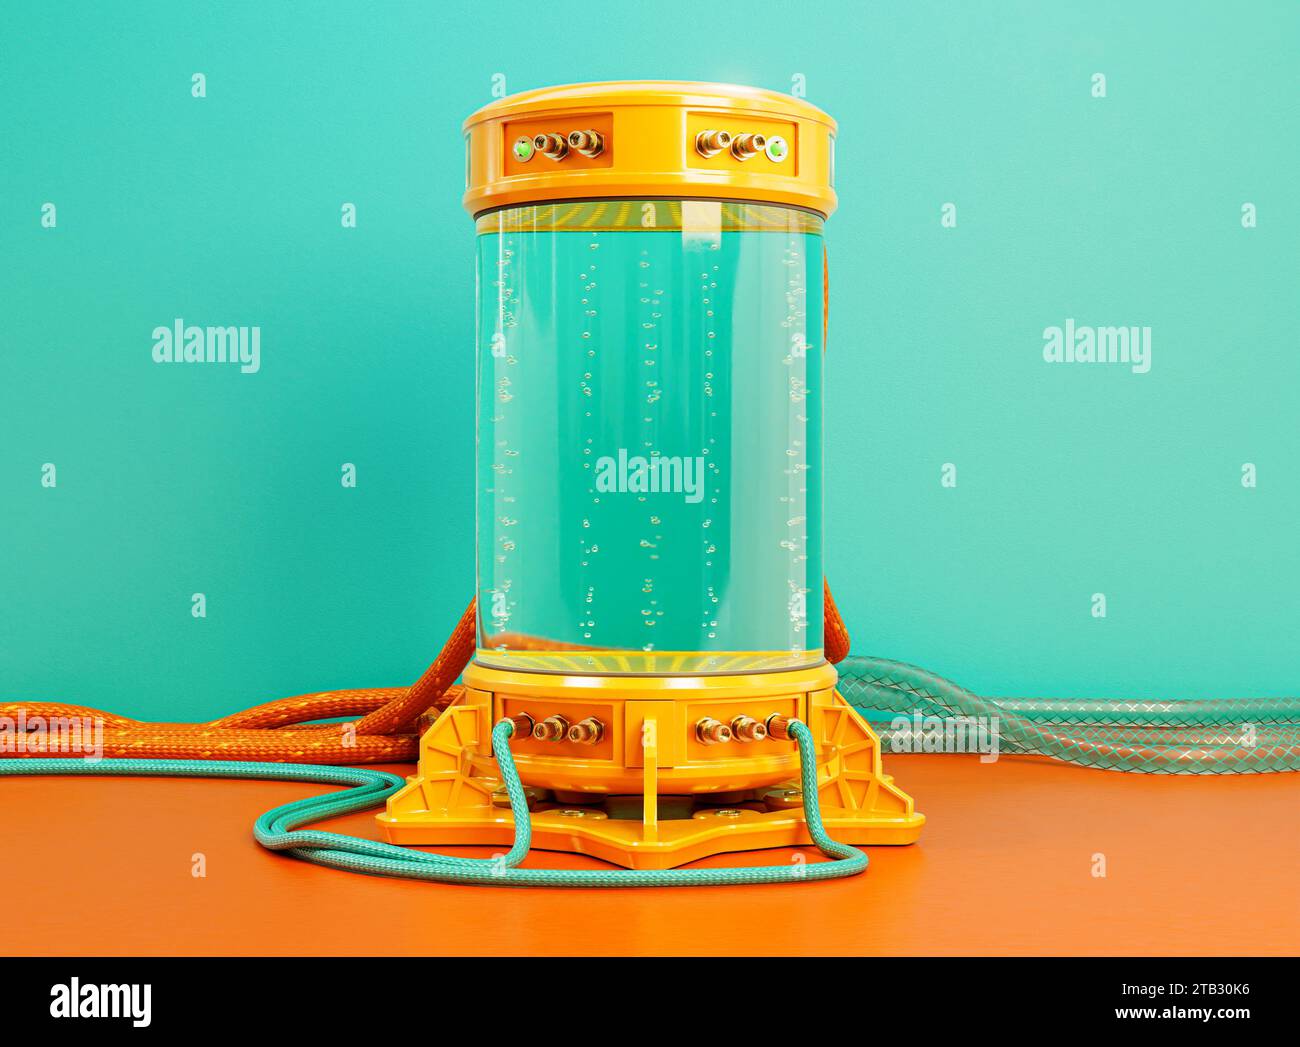 Una macchina criogenica per provette criogeniche da laboratorio futuristico dai colori brillanti riempita di liquido e bolle con cavi collegati e tubi in gomma - Foto Stock